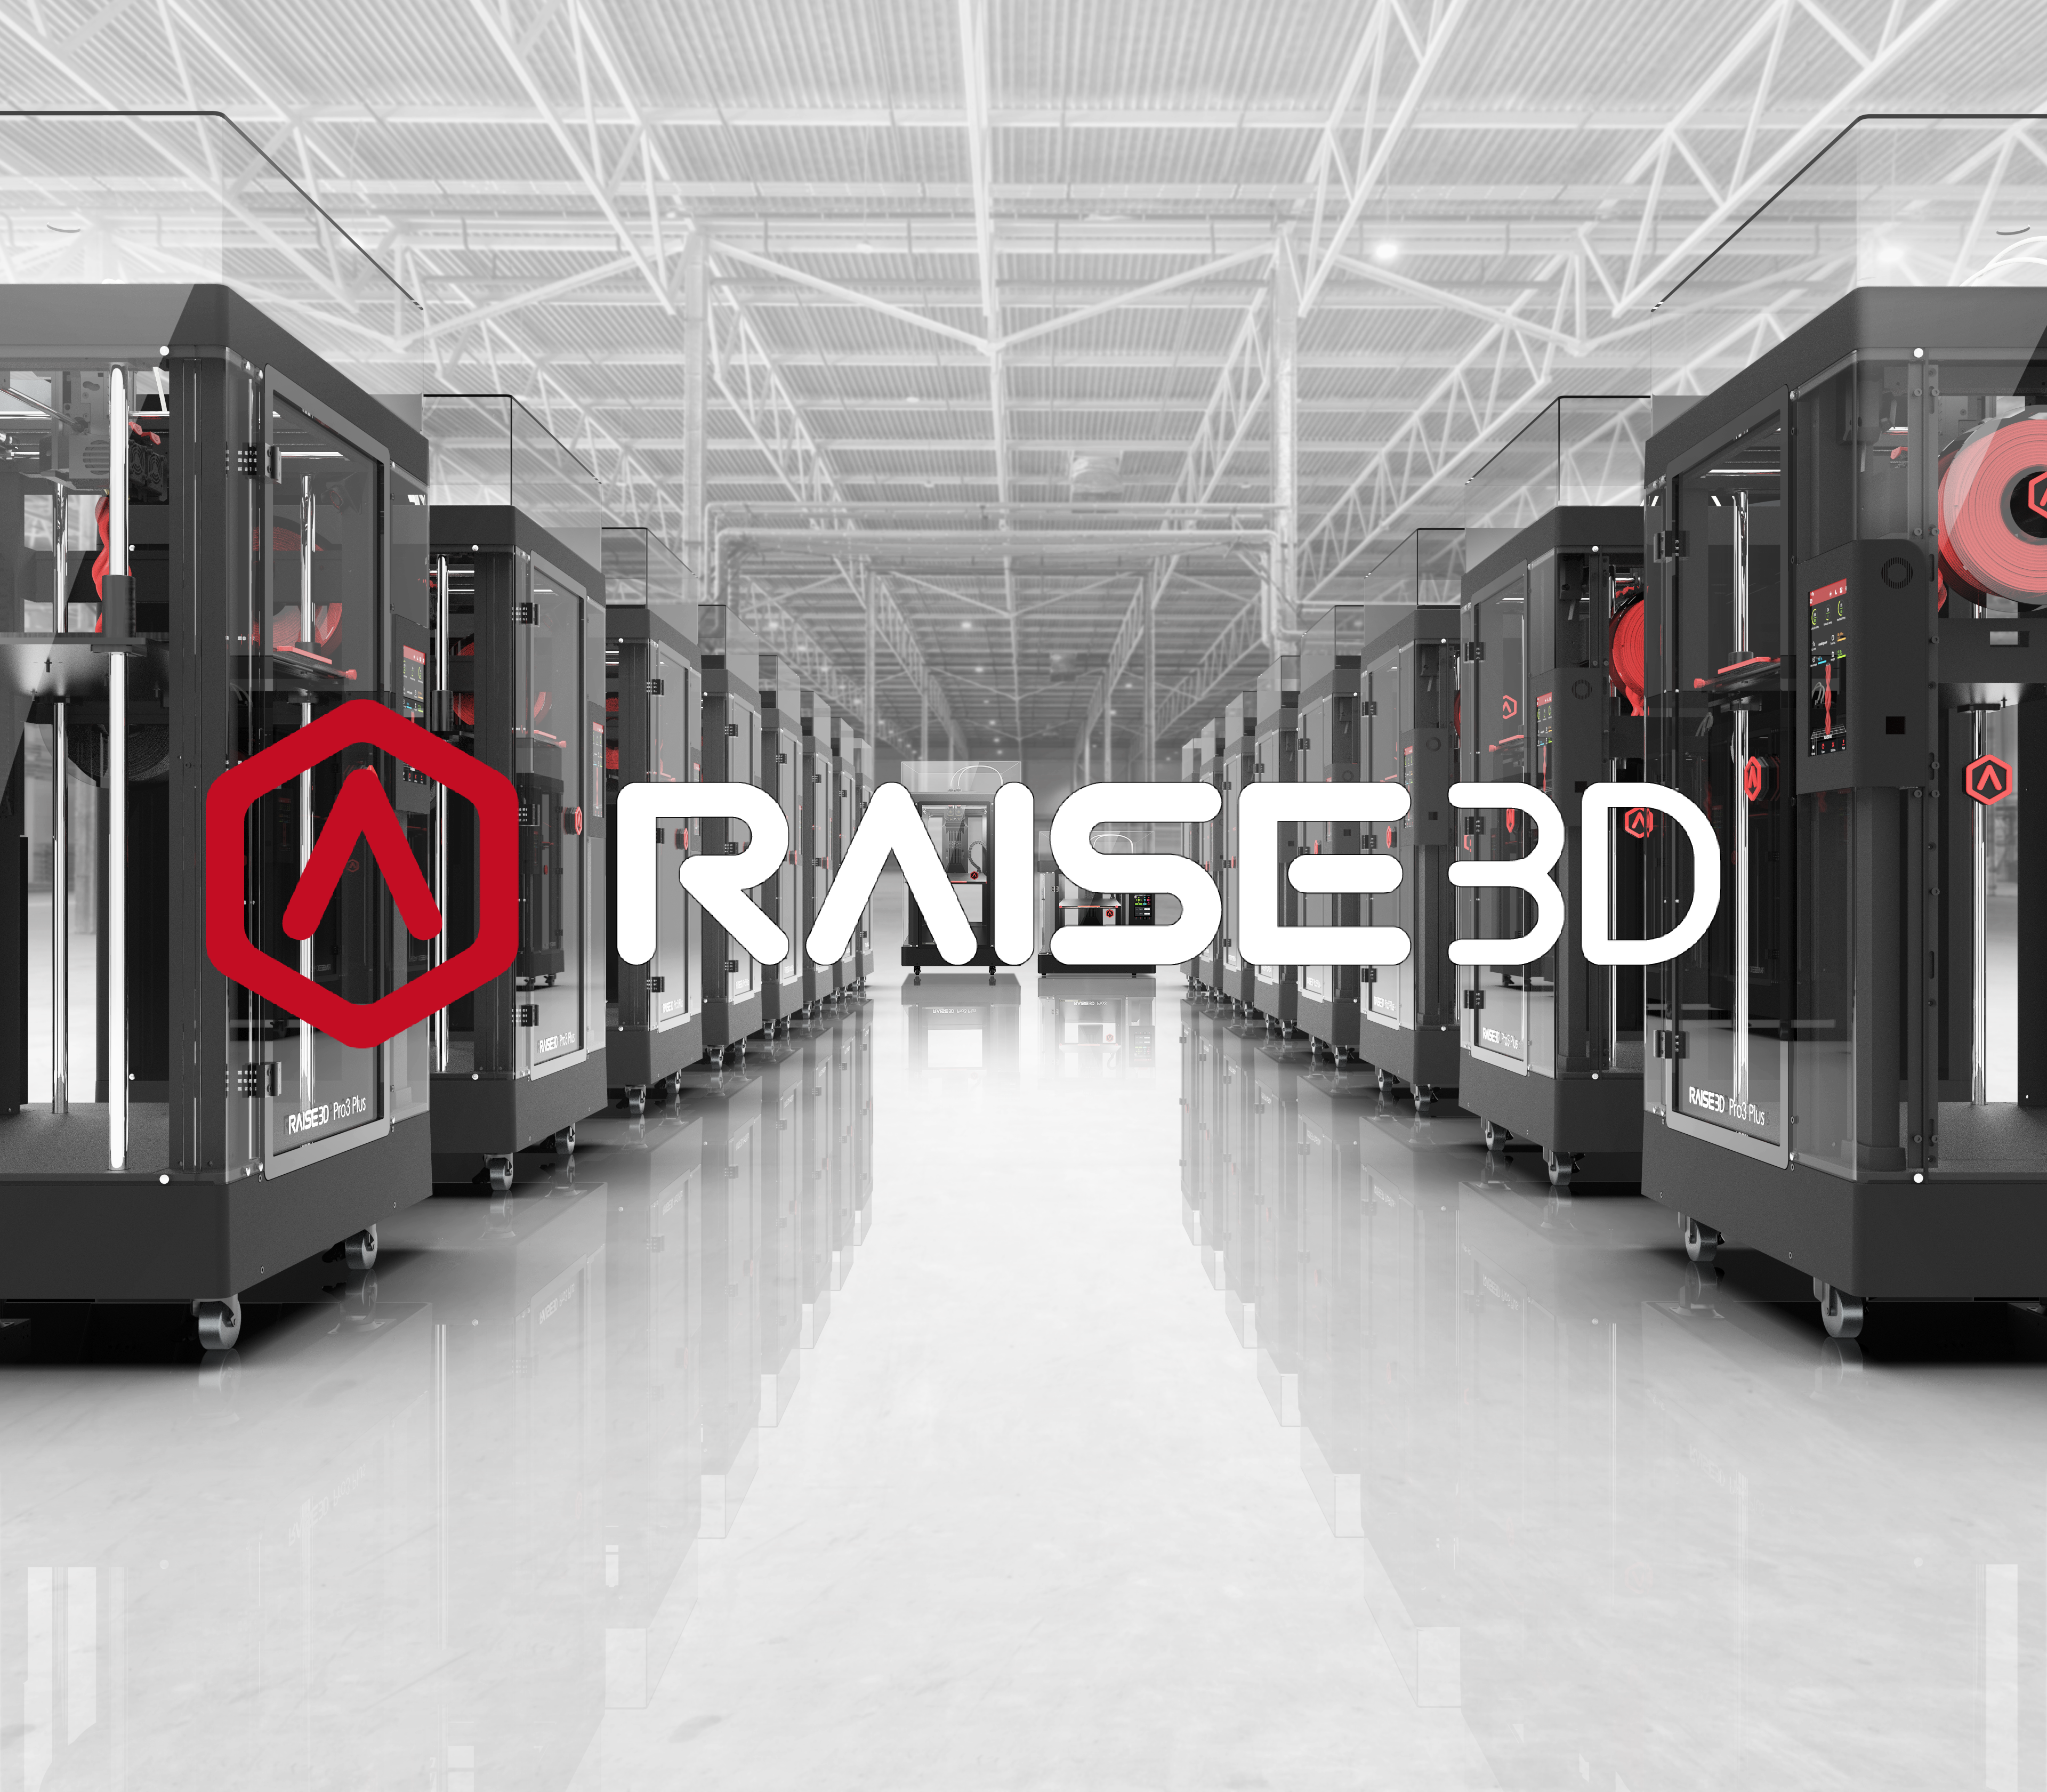 Multi3dprint distribuidor oficial Raise3D en España